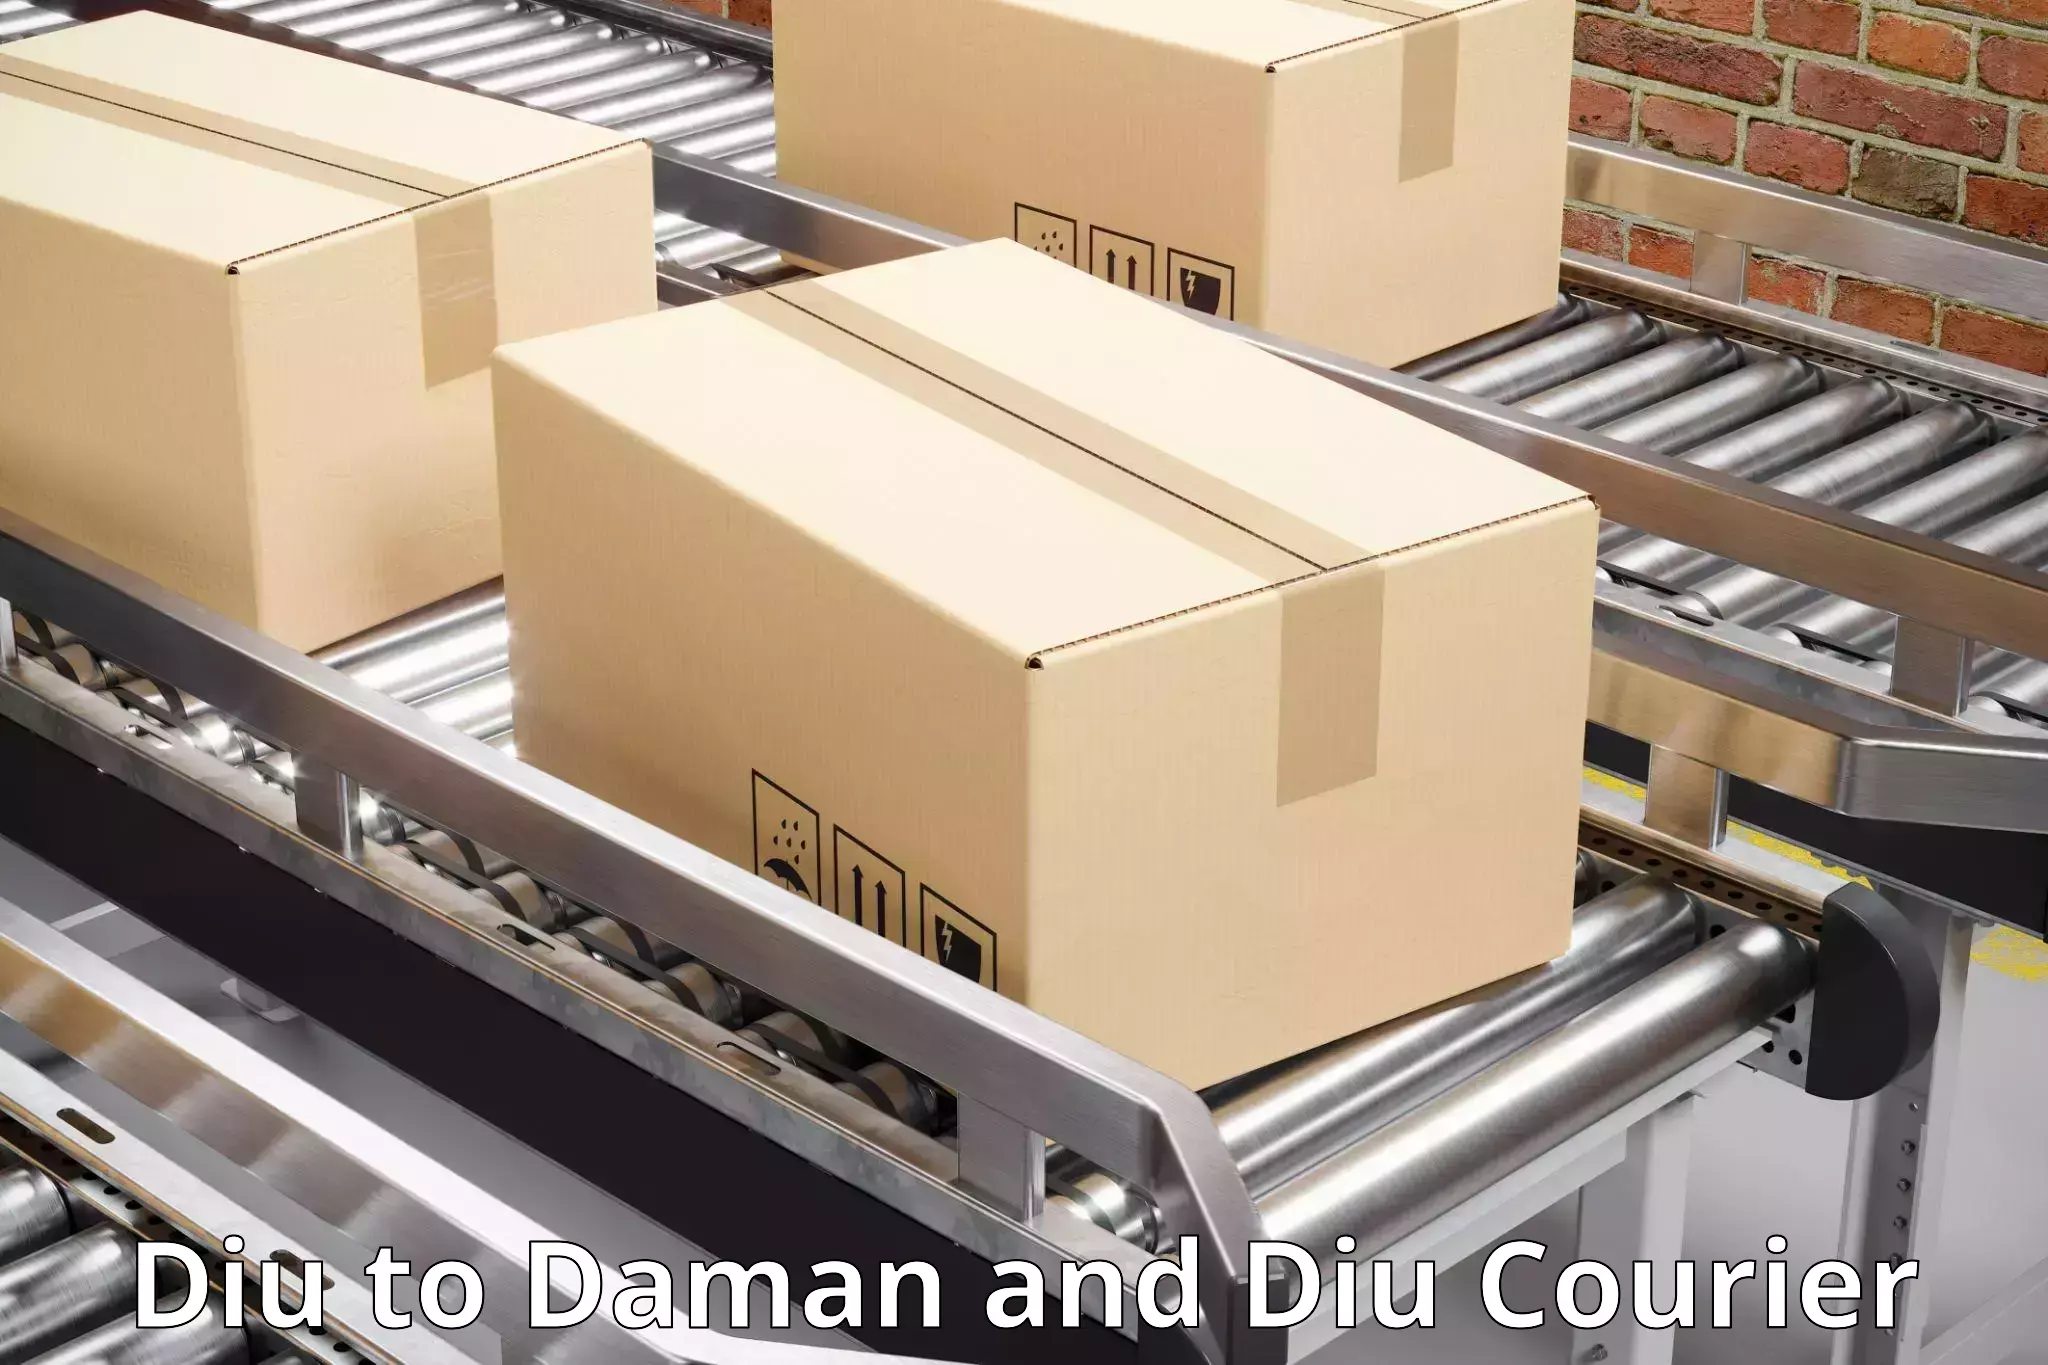 Courier service partnerships Diu to Daman